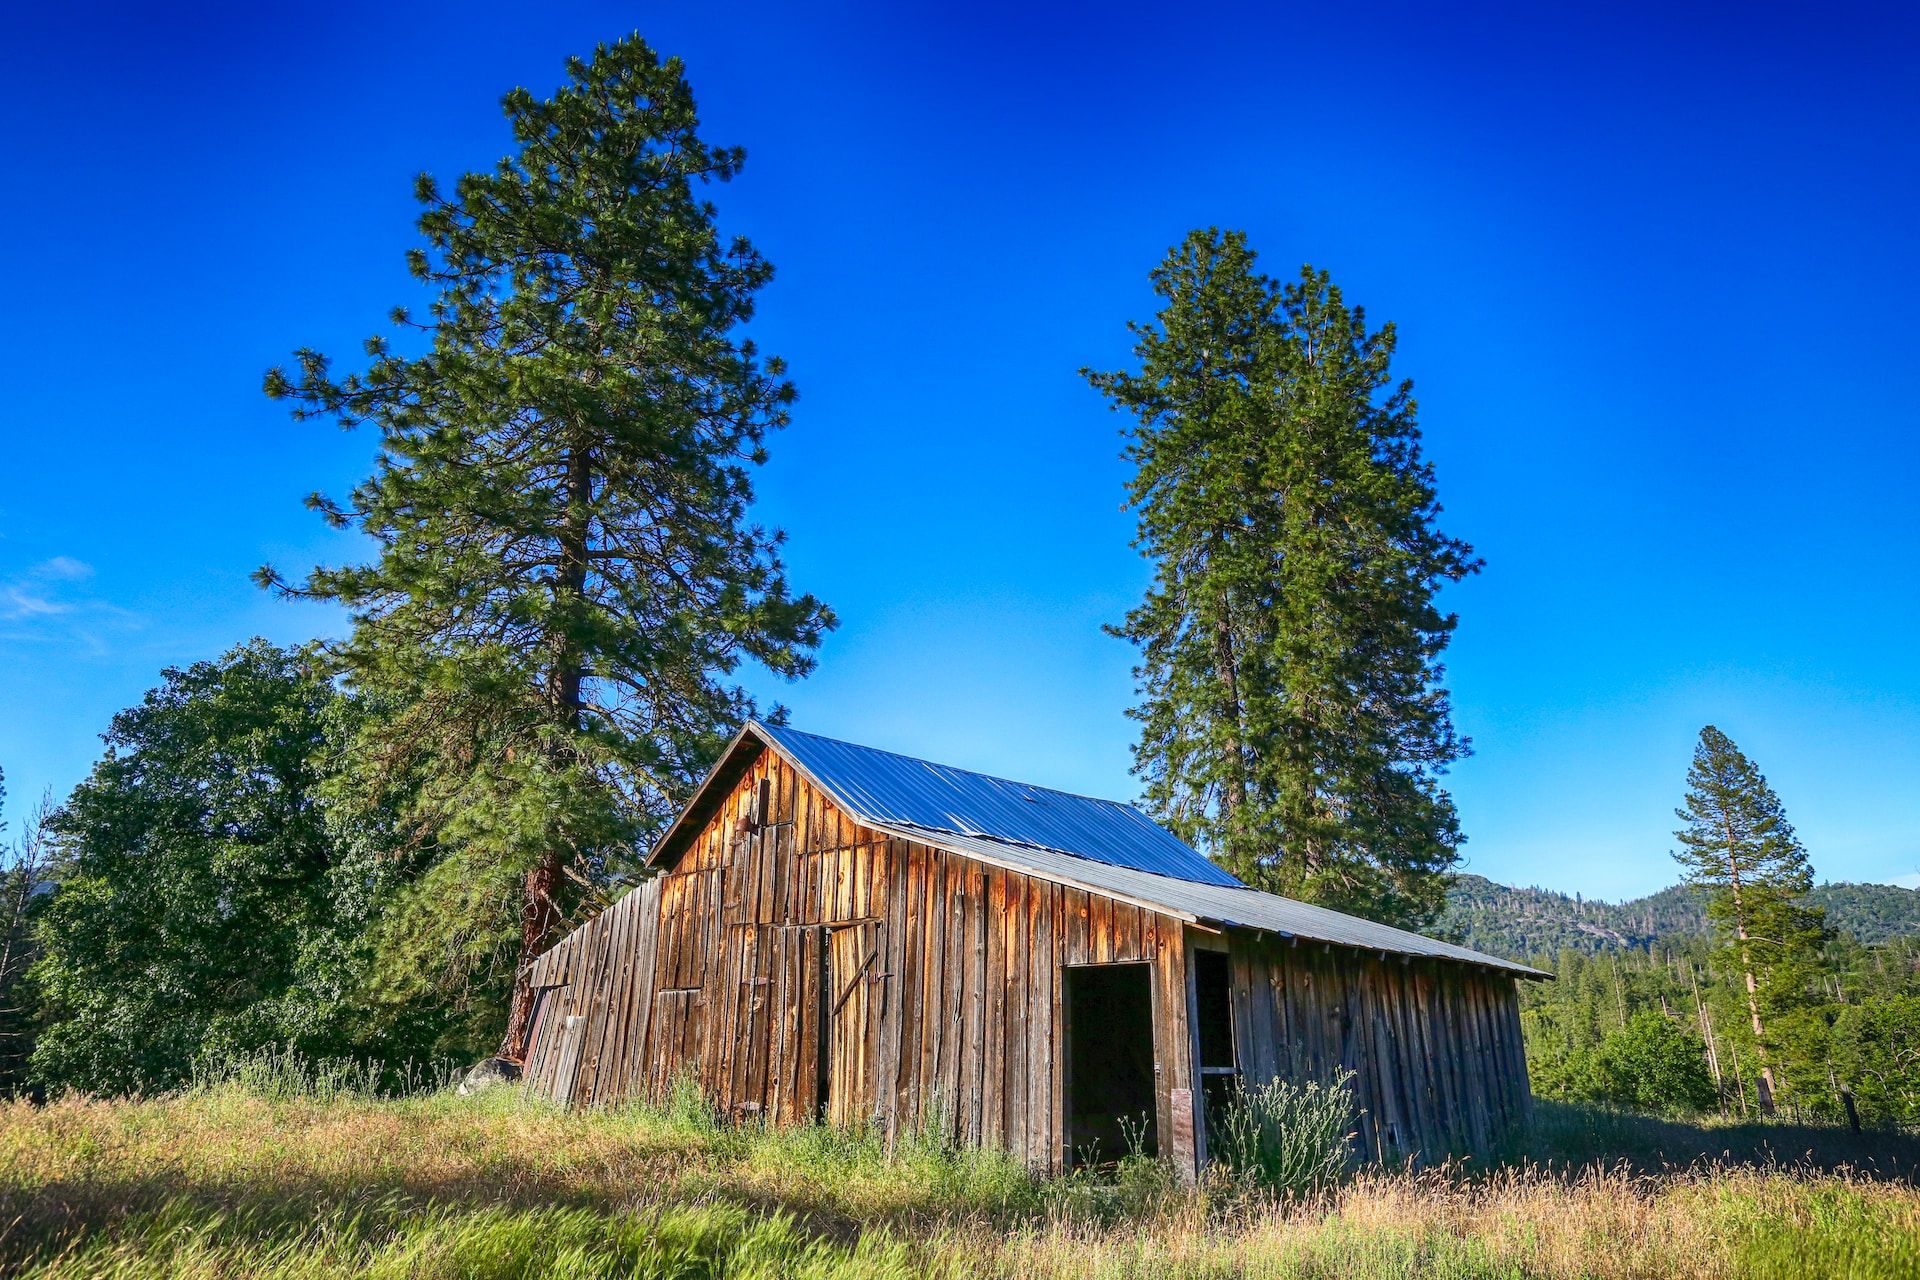 A log cabin in Mariposa, California, CA, USA